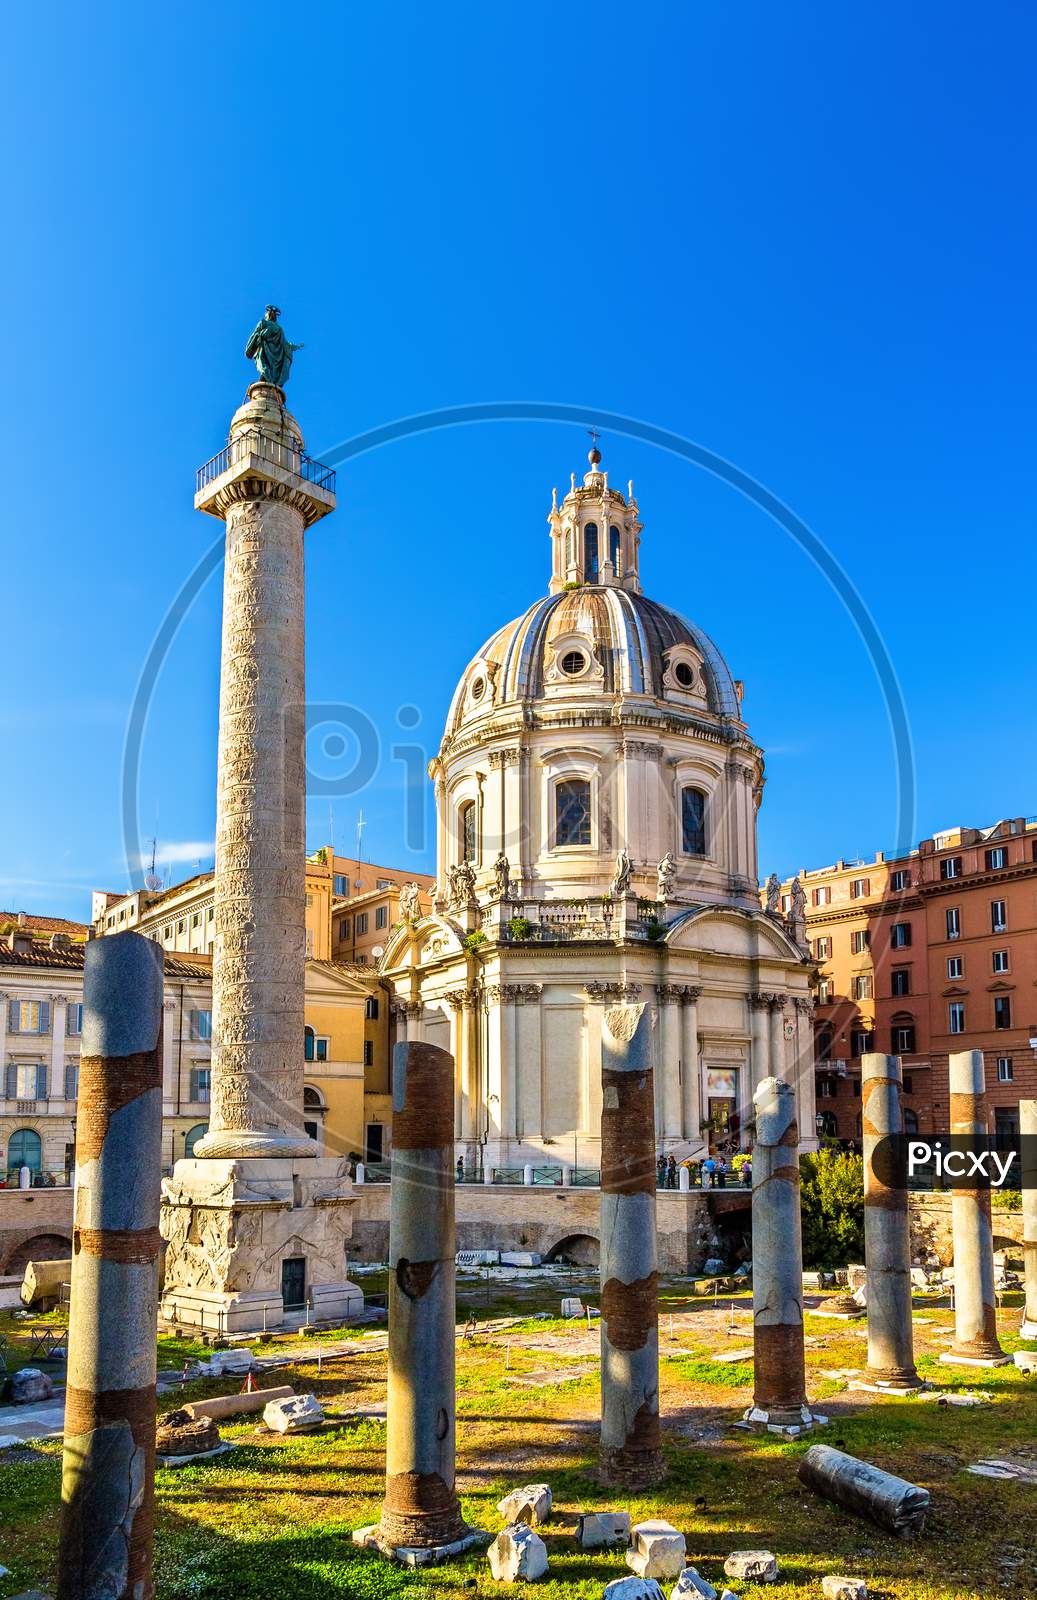 Trajan'S Column And Santissimo Nome Di Maria Al Foro Traiano Church In Rome